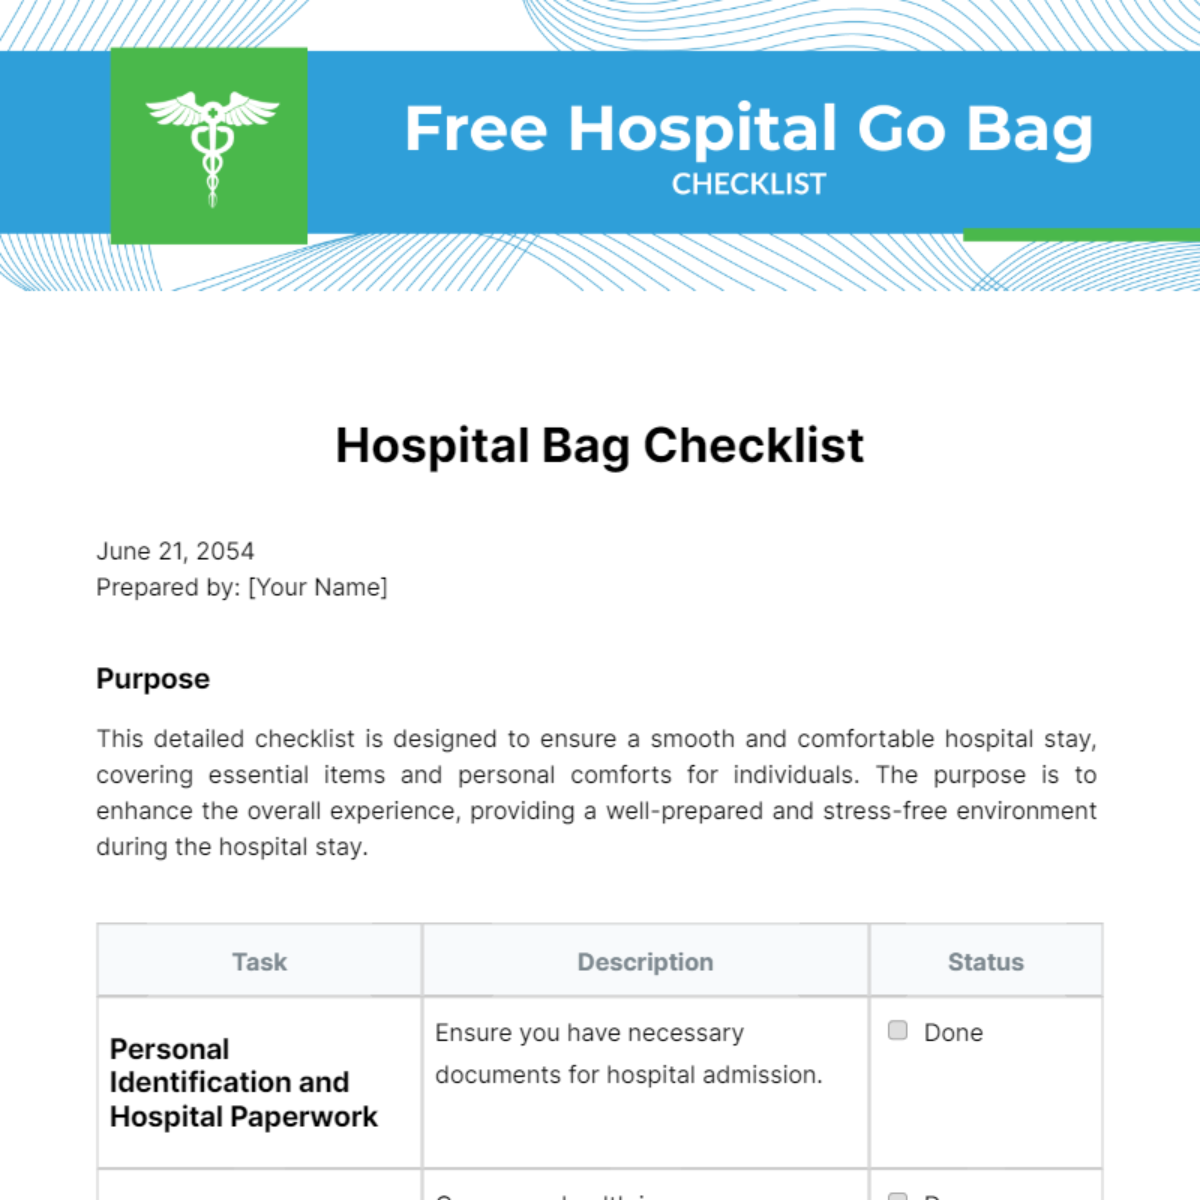 Free Hospital Go Bag Checklist Template